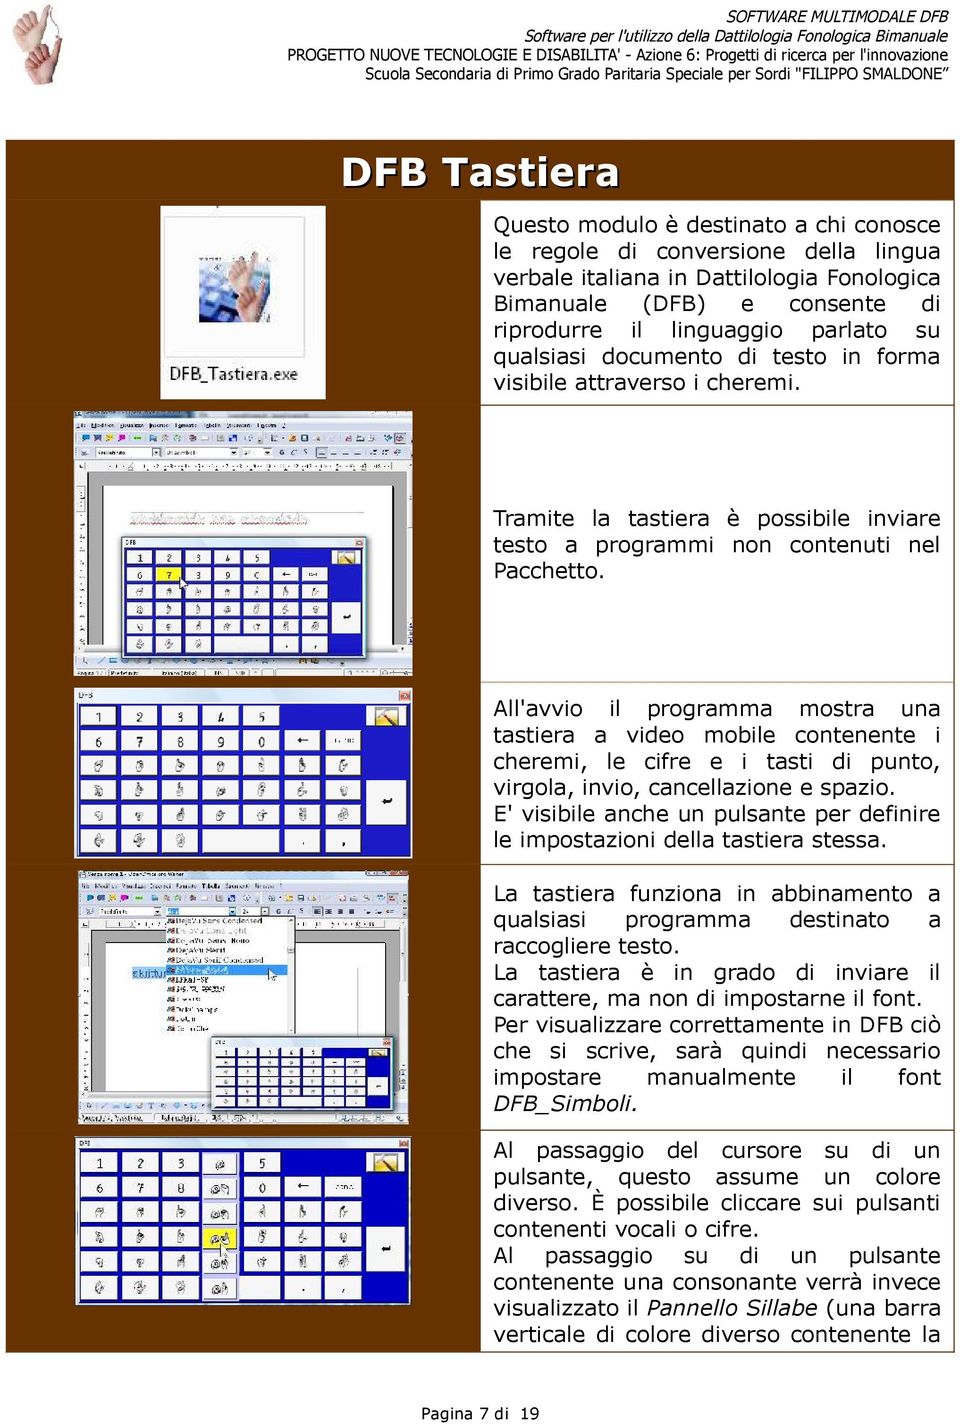 All'avvio il programma mostra una tastiera a video mobile contenente i cheremi, le cifre e i tasti di punto, virgola, invio, cancellazione e spazio.